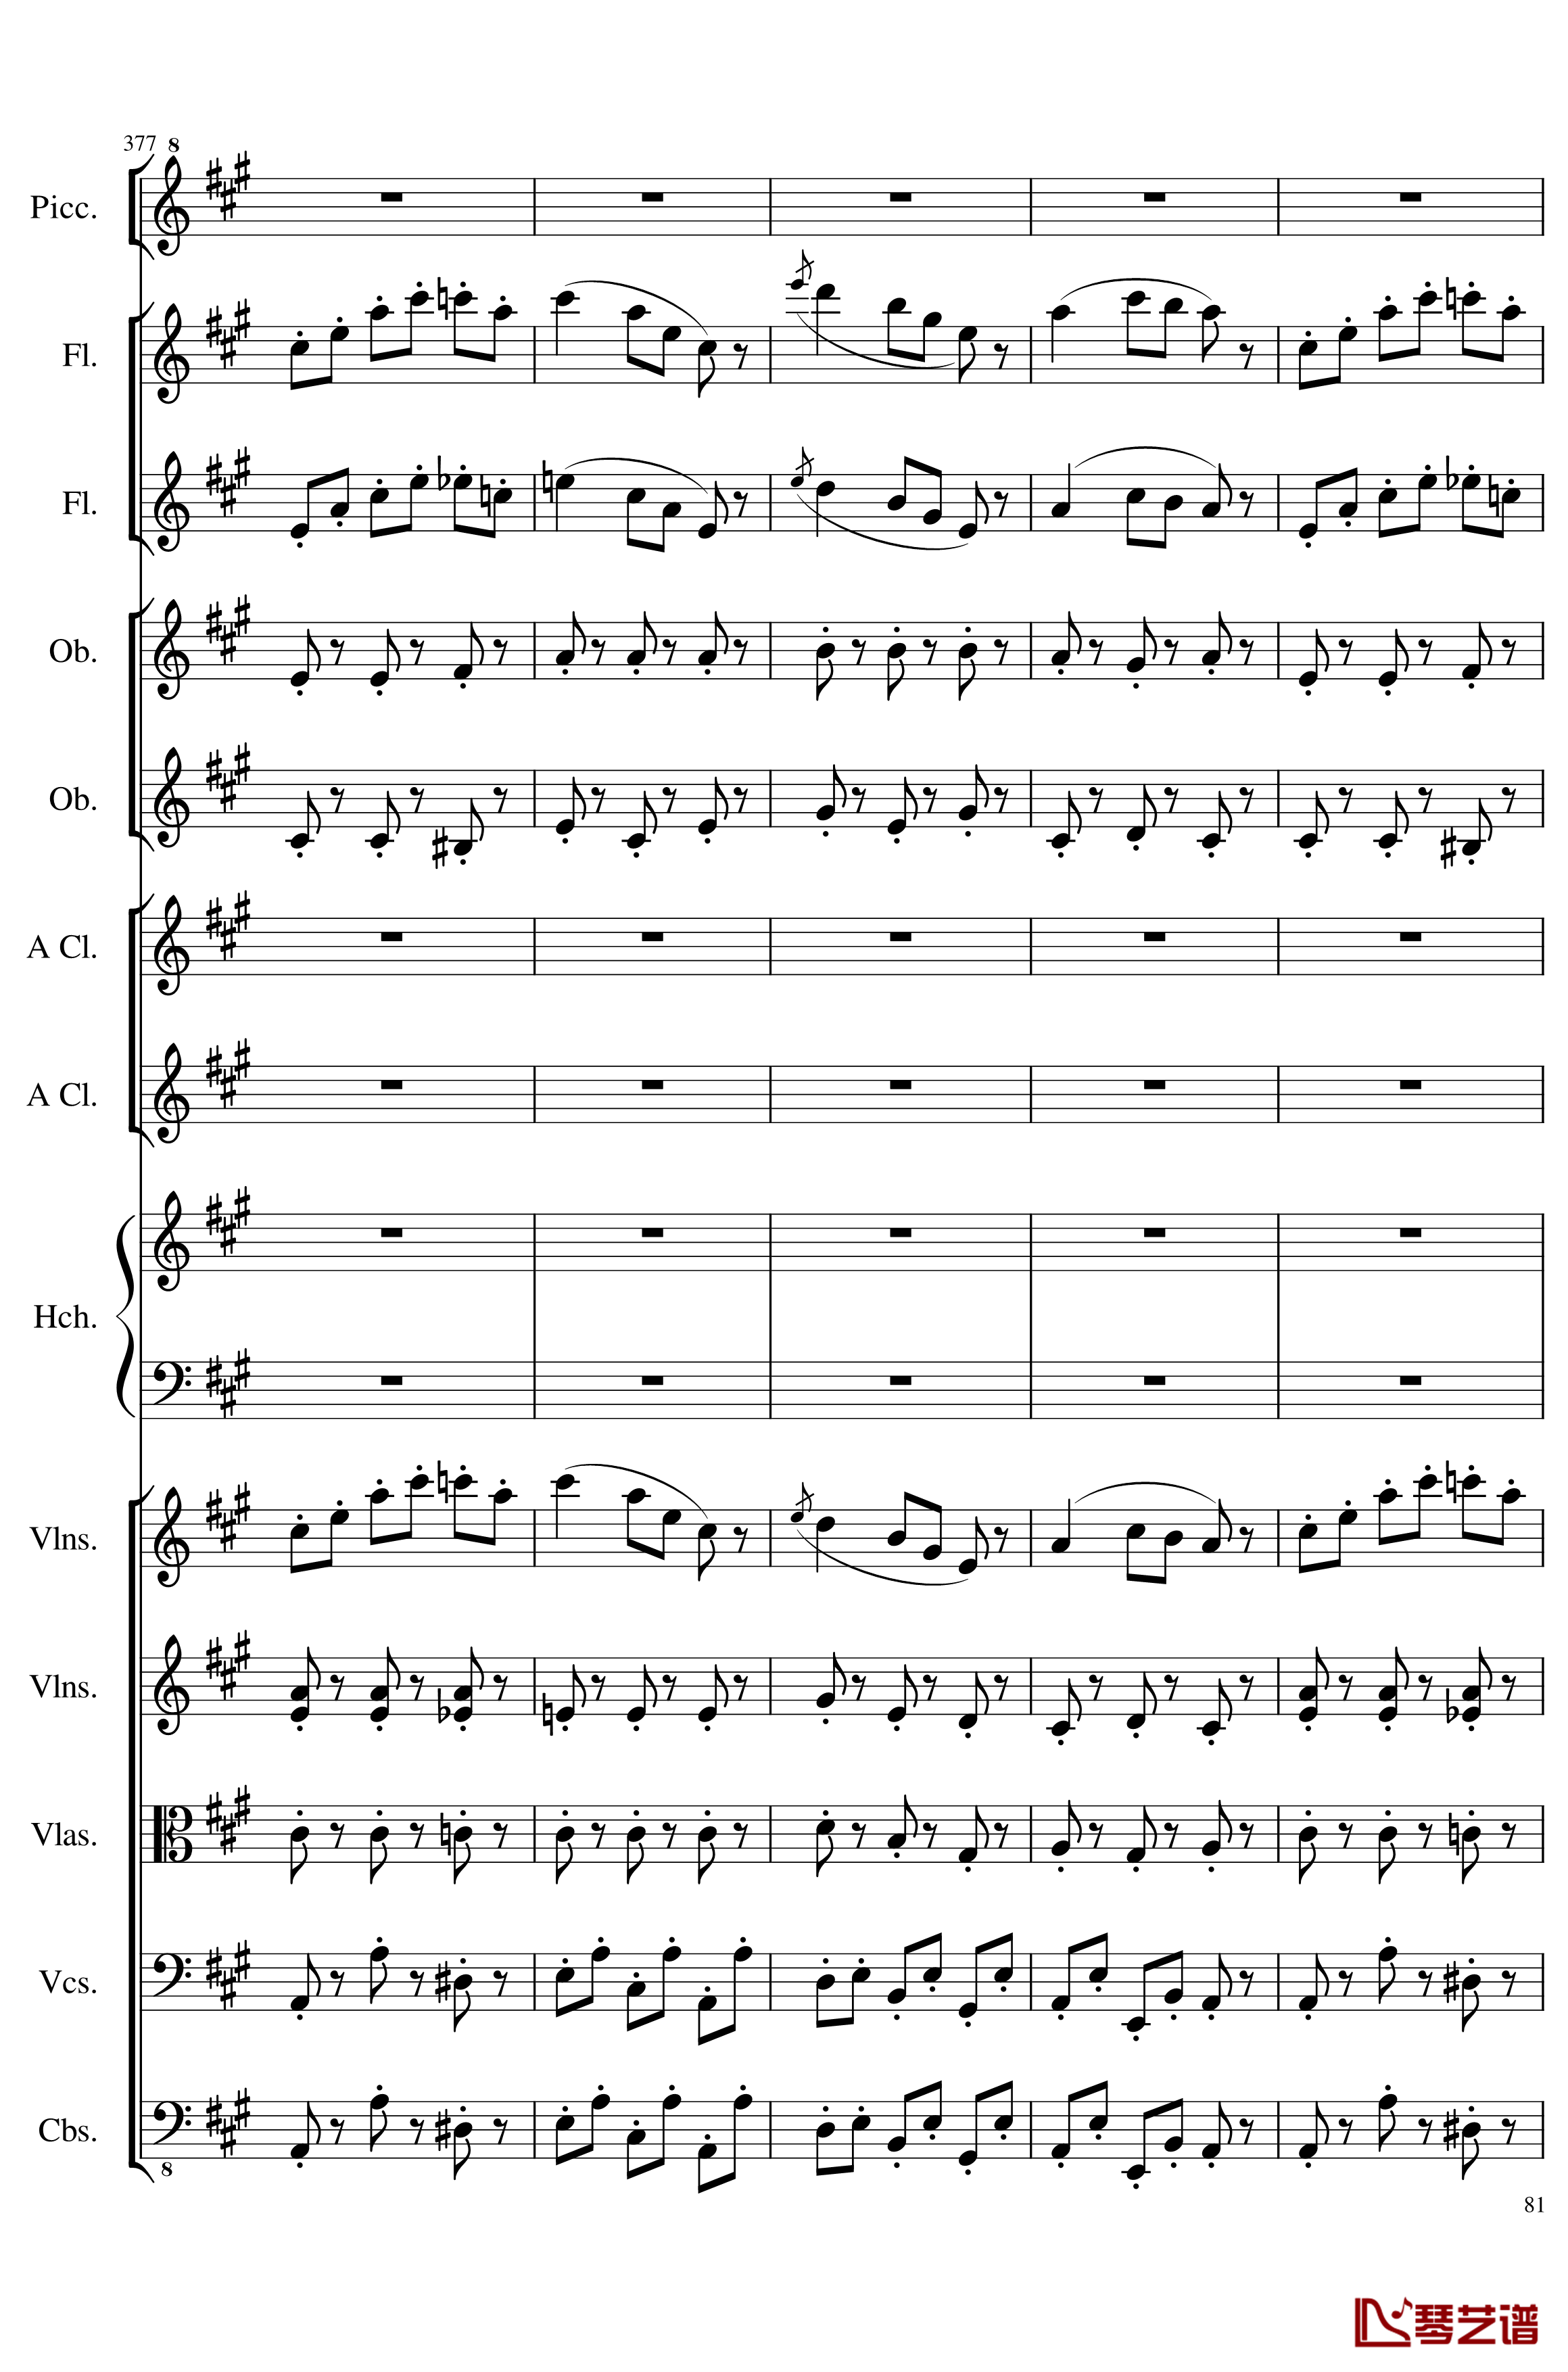 7 Contredanses No.1-7, Op.124钢琴谱-7首乡村舞曲，第一至第七，作品124-一个球81